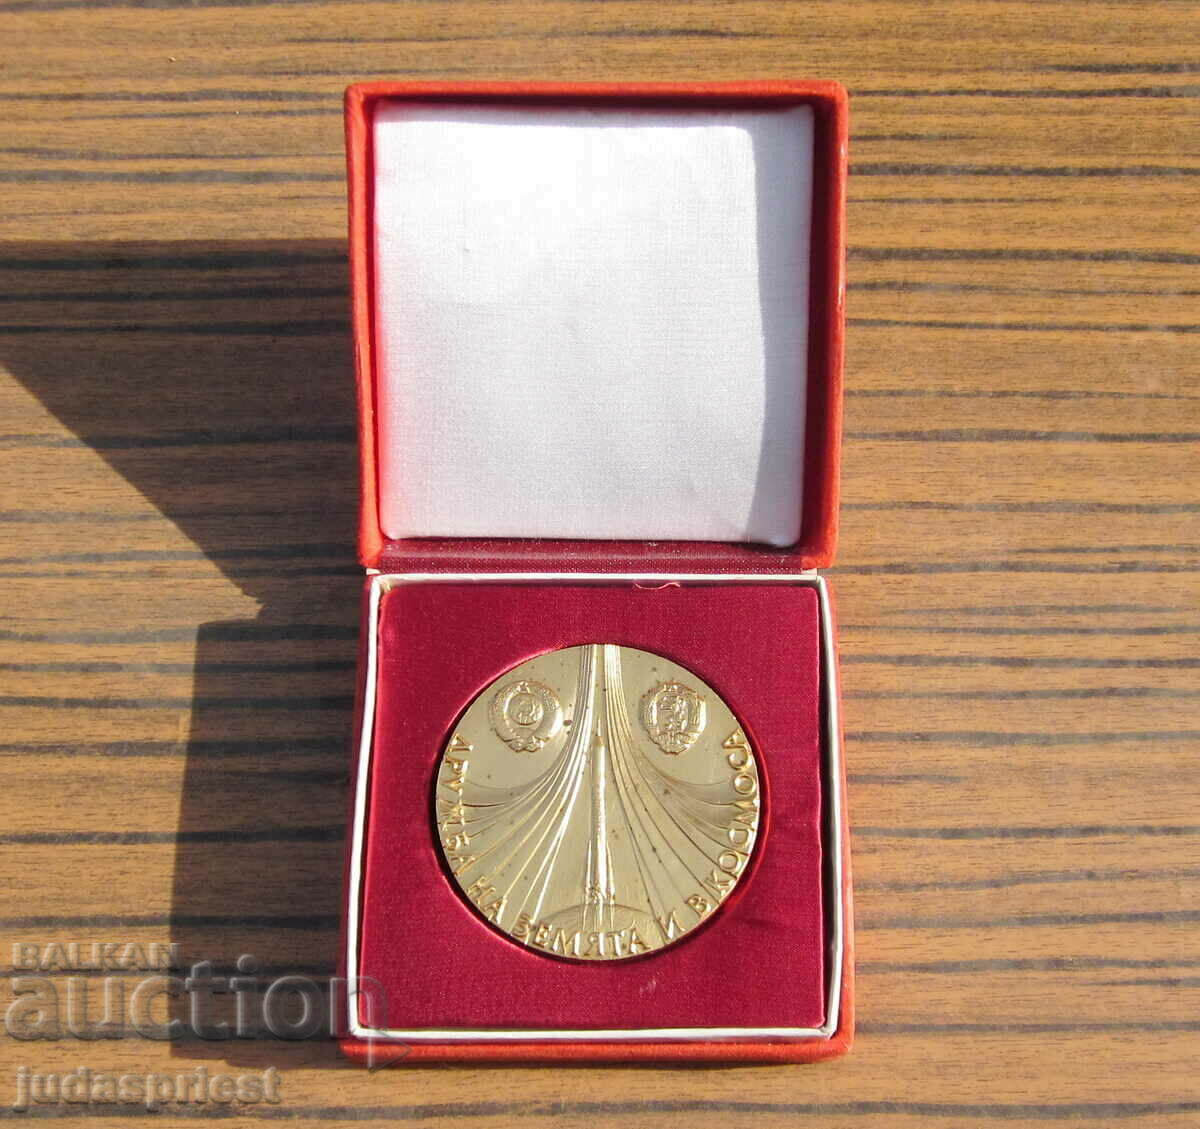 Български космически медал плакет космос полет Шипка 1988 г.